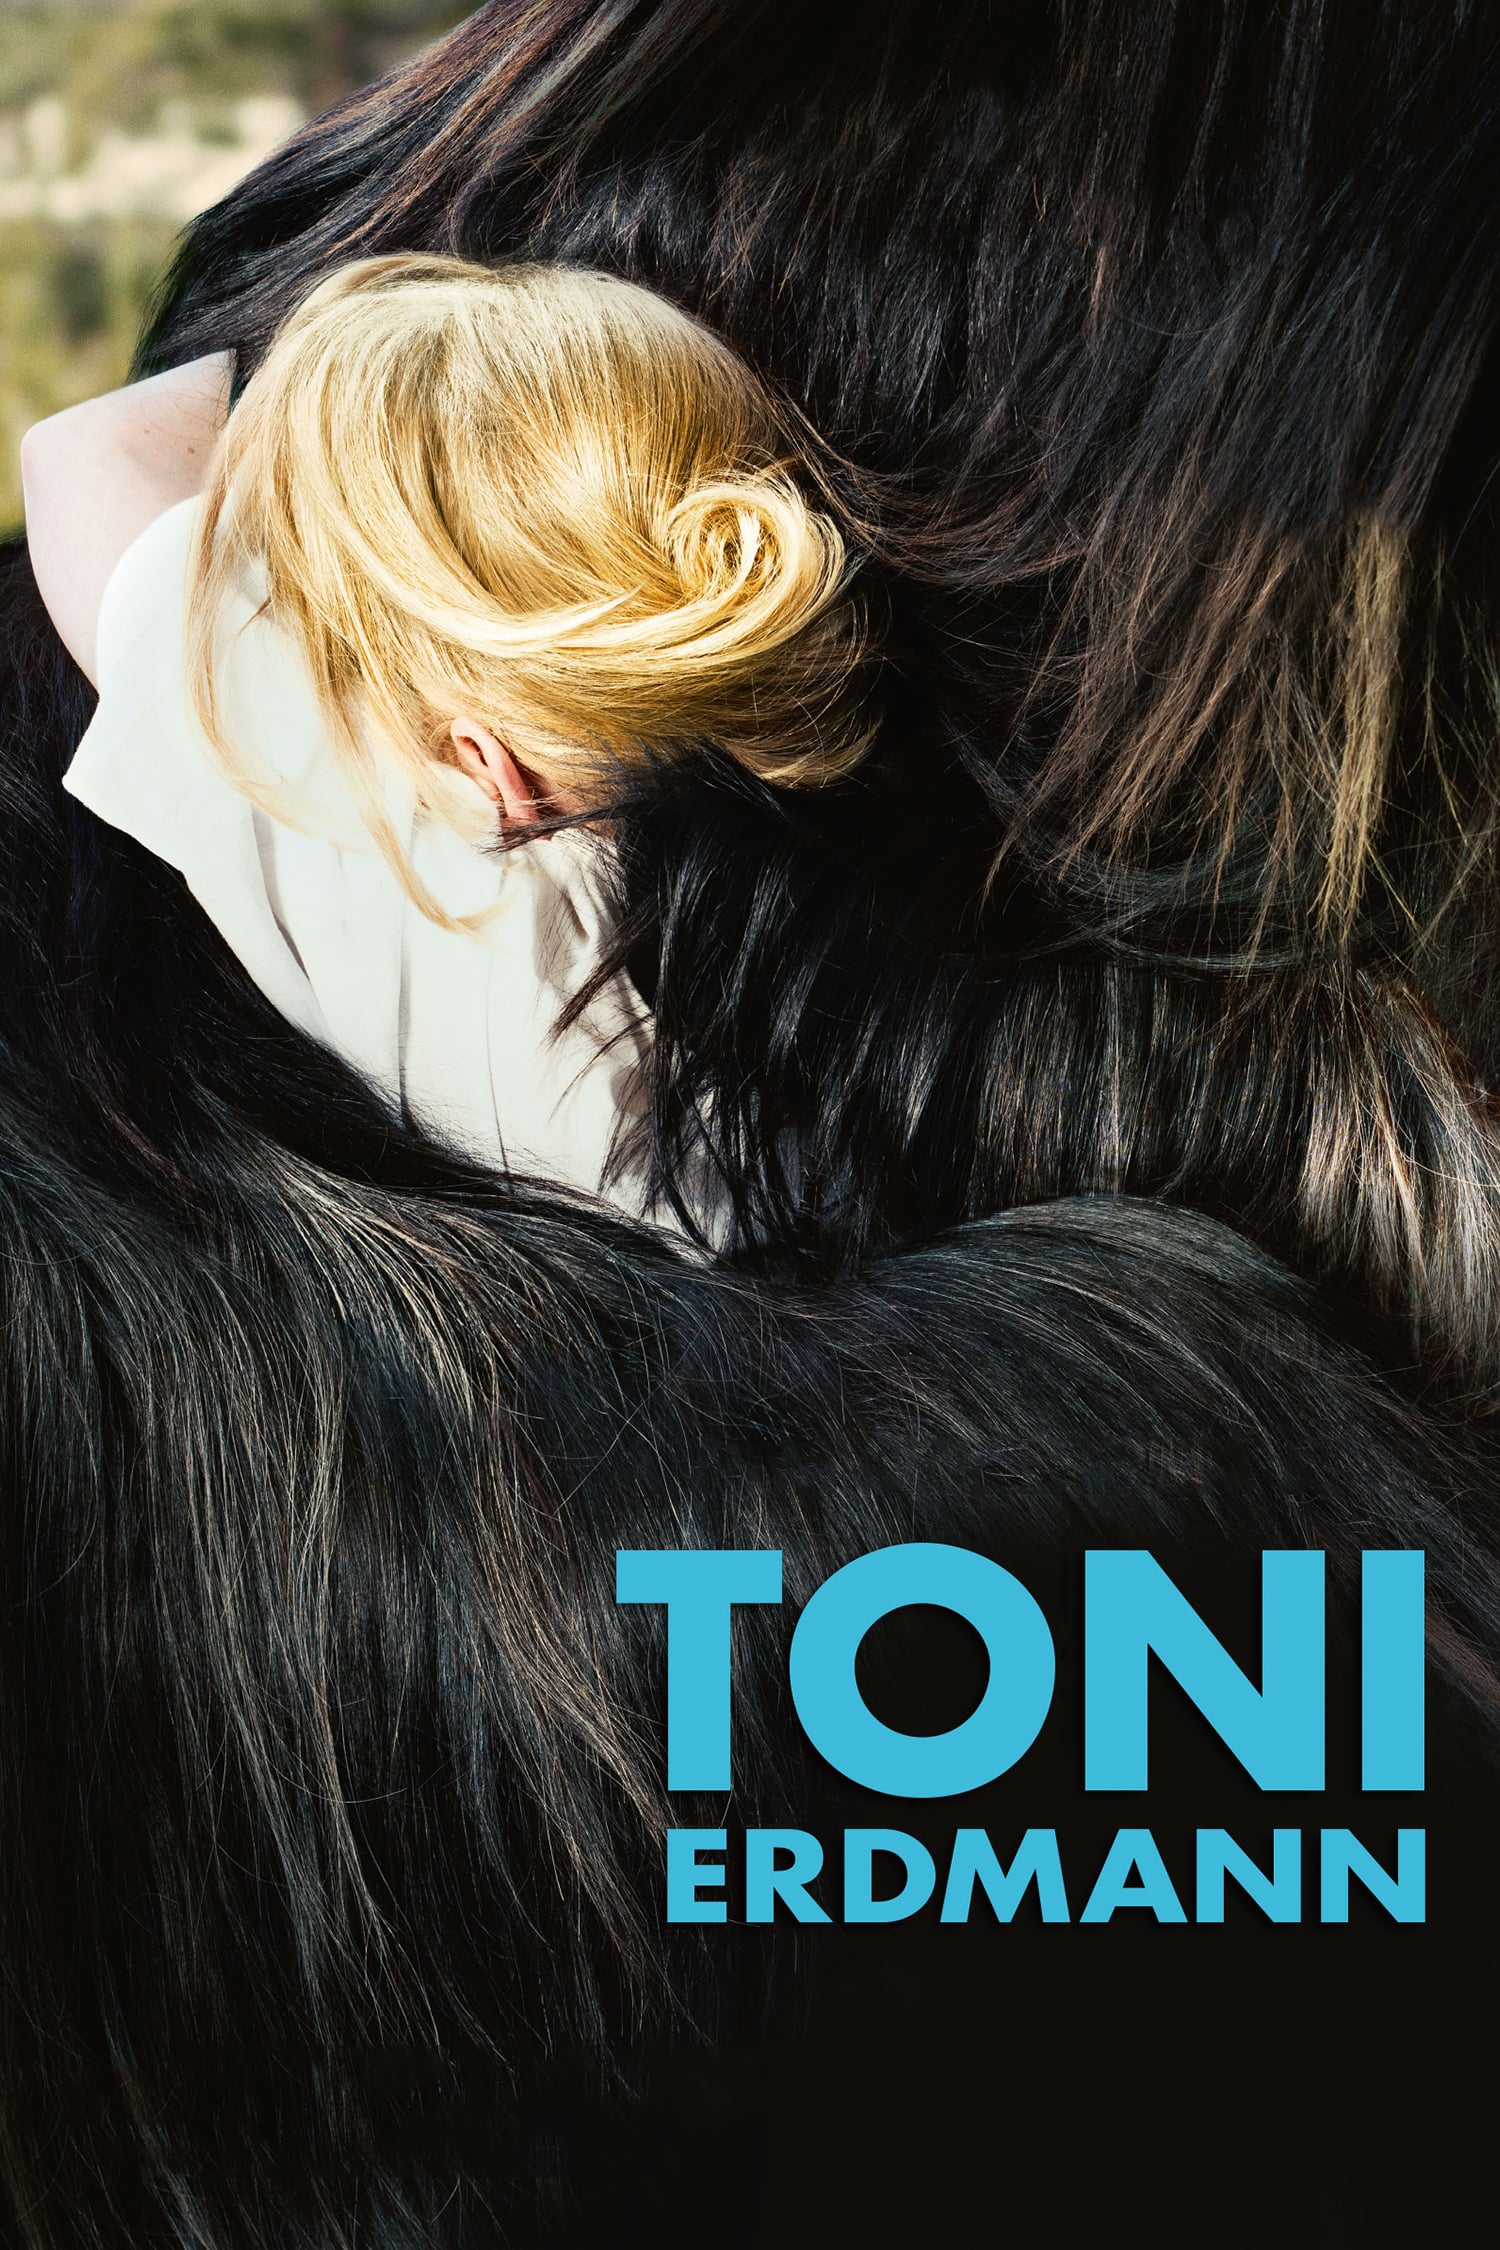 Poster for the movie "Toni Erdmann"